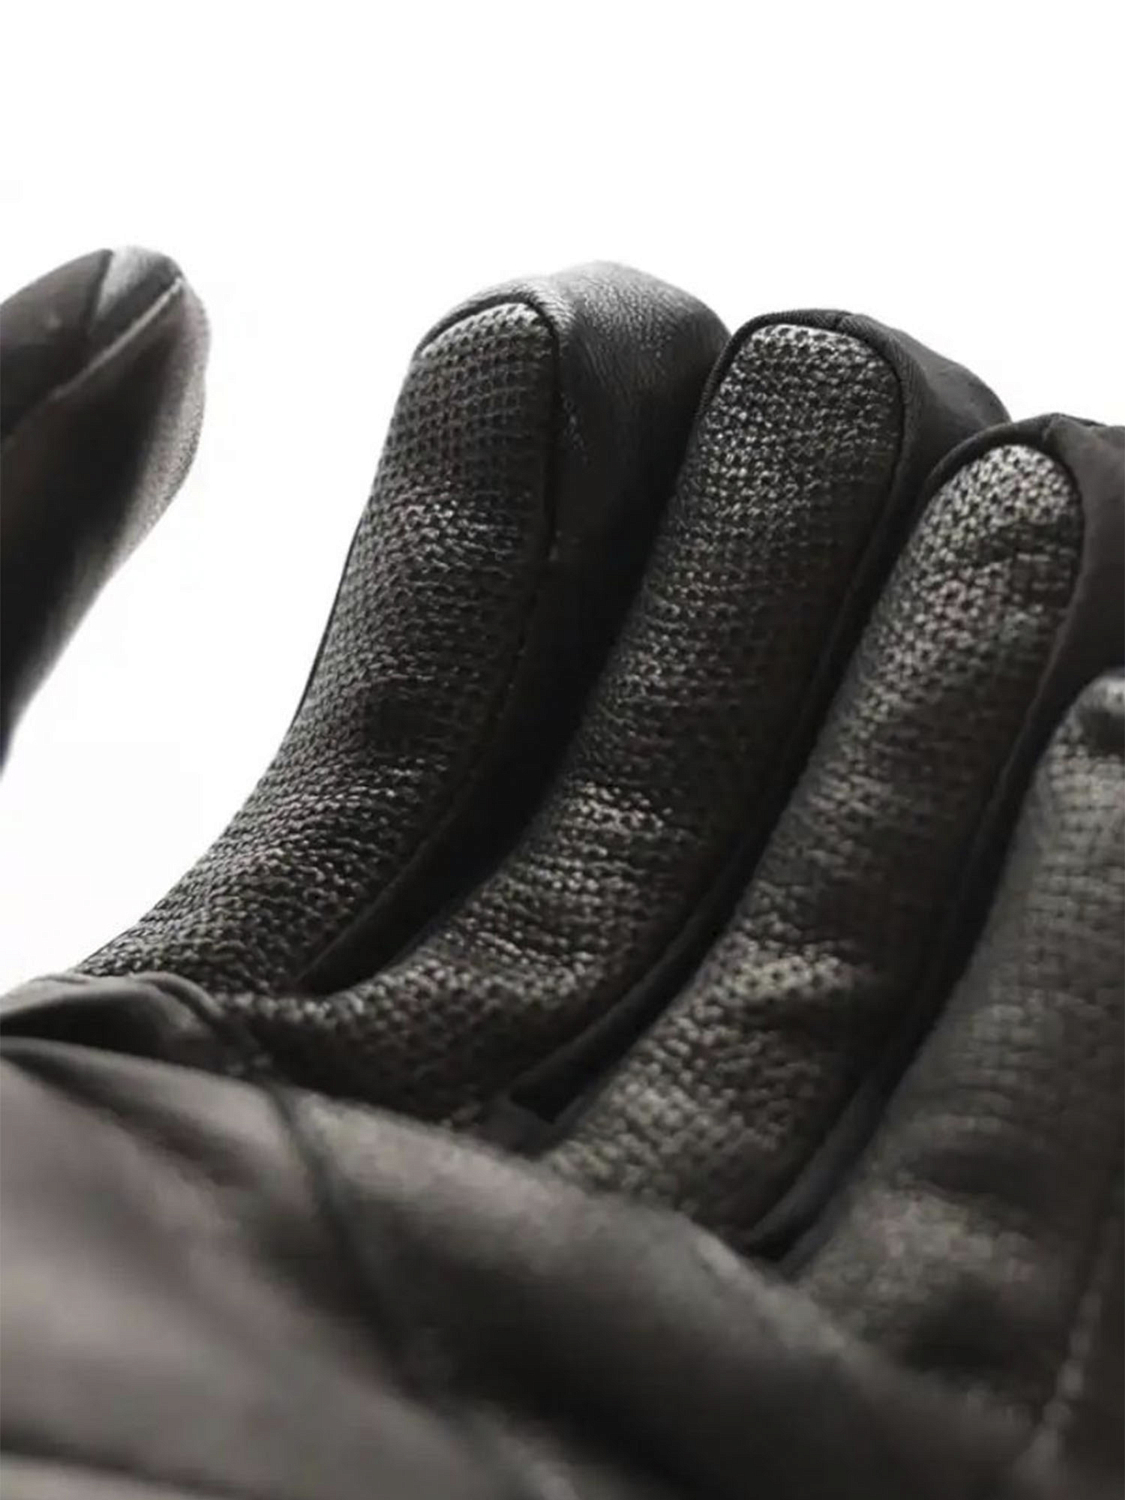 Перчатки с обогревом LENZ Heat Glove 6.0 Finger Cap Men Black